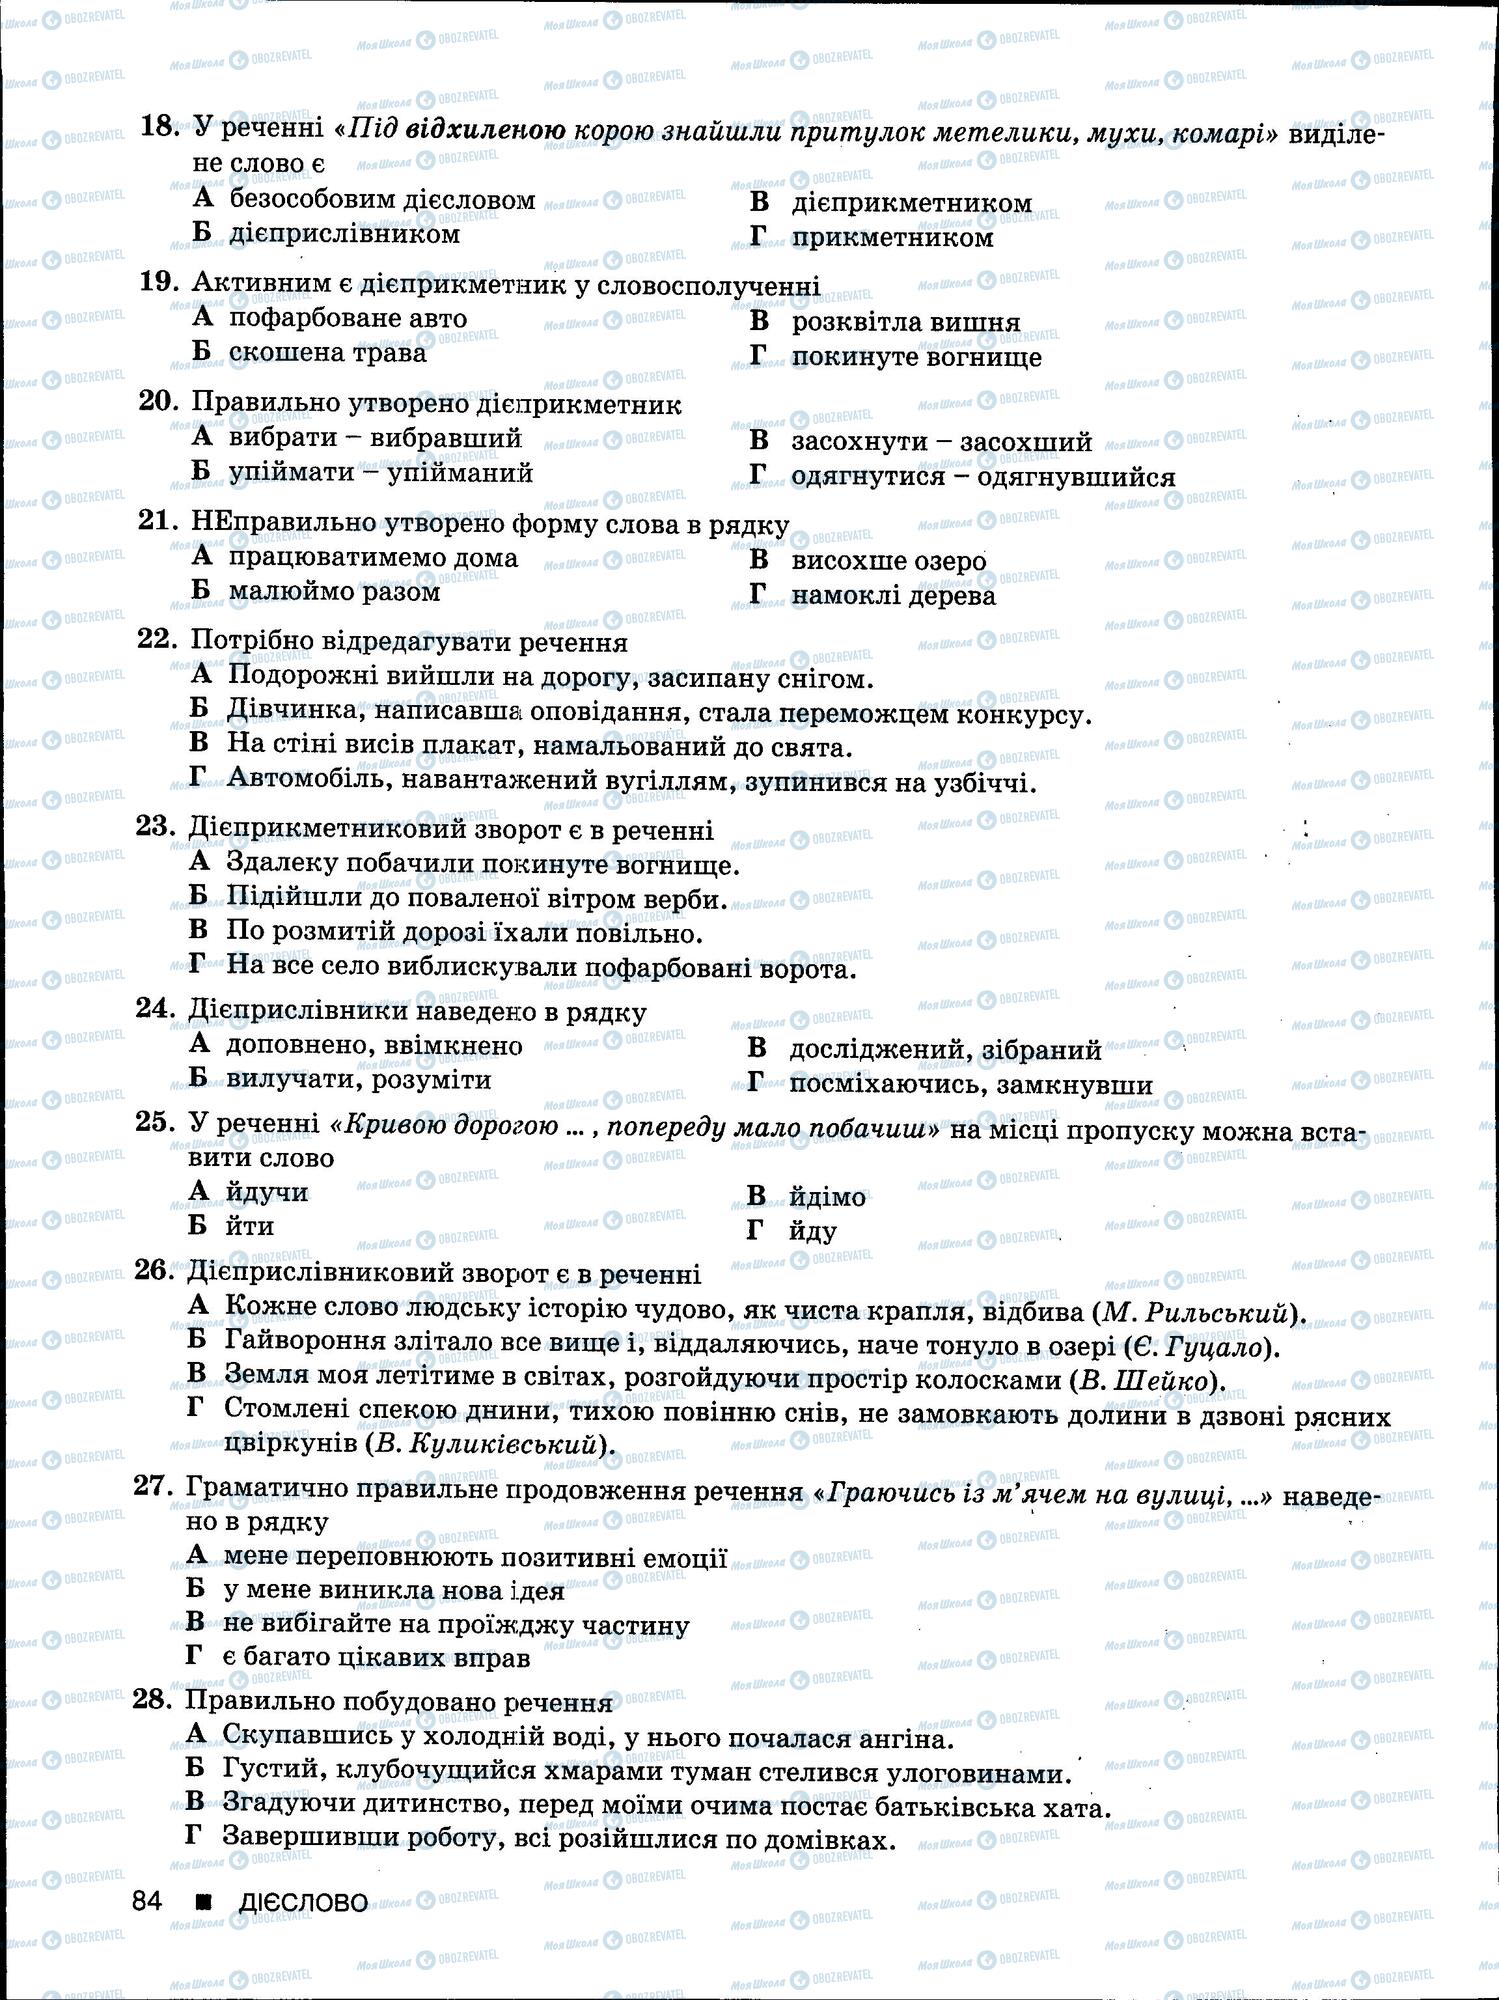 ЗНО Укр мова 11 класс страница 84